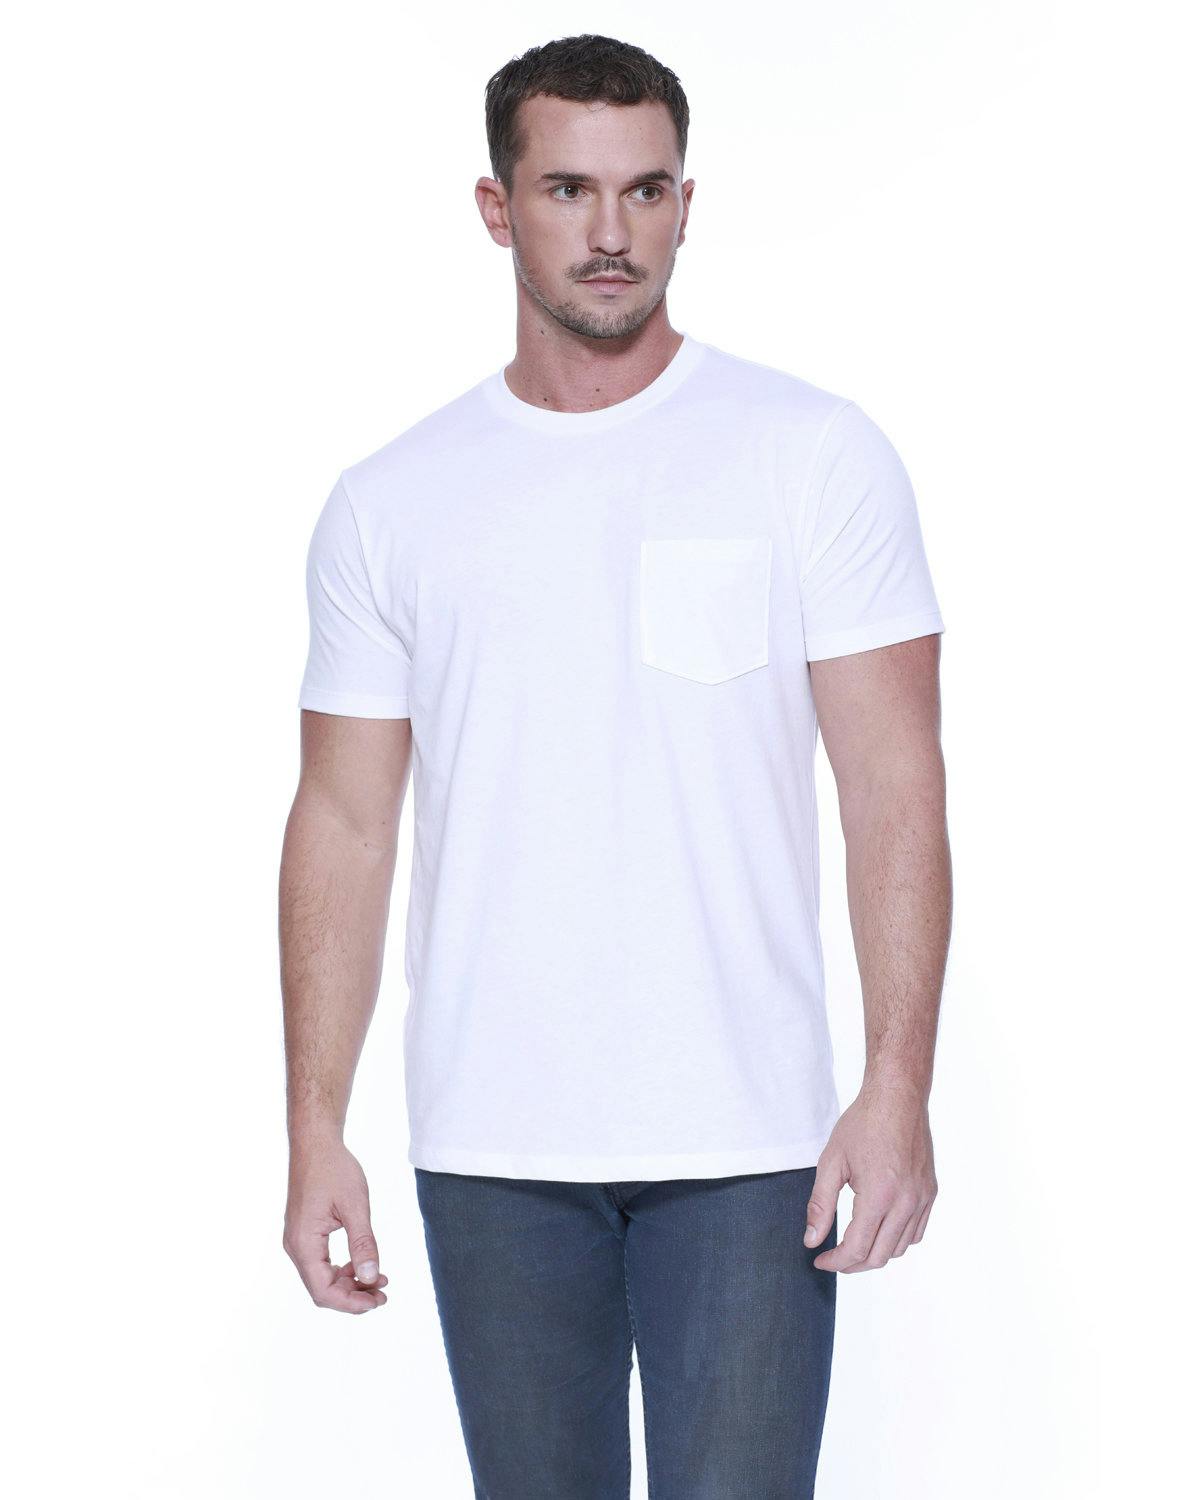 Image for Men's CVC Pocket T-Shirt